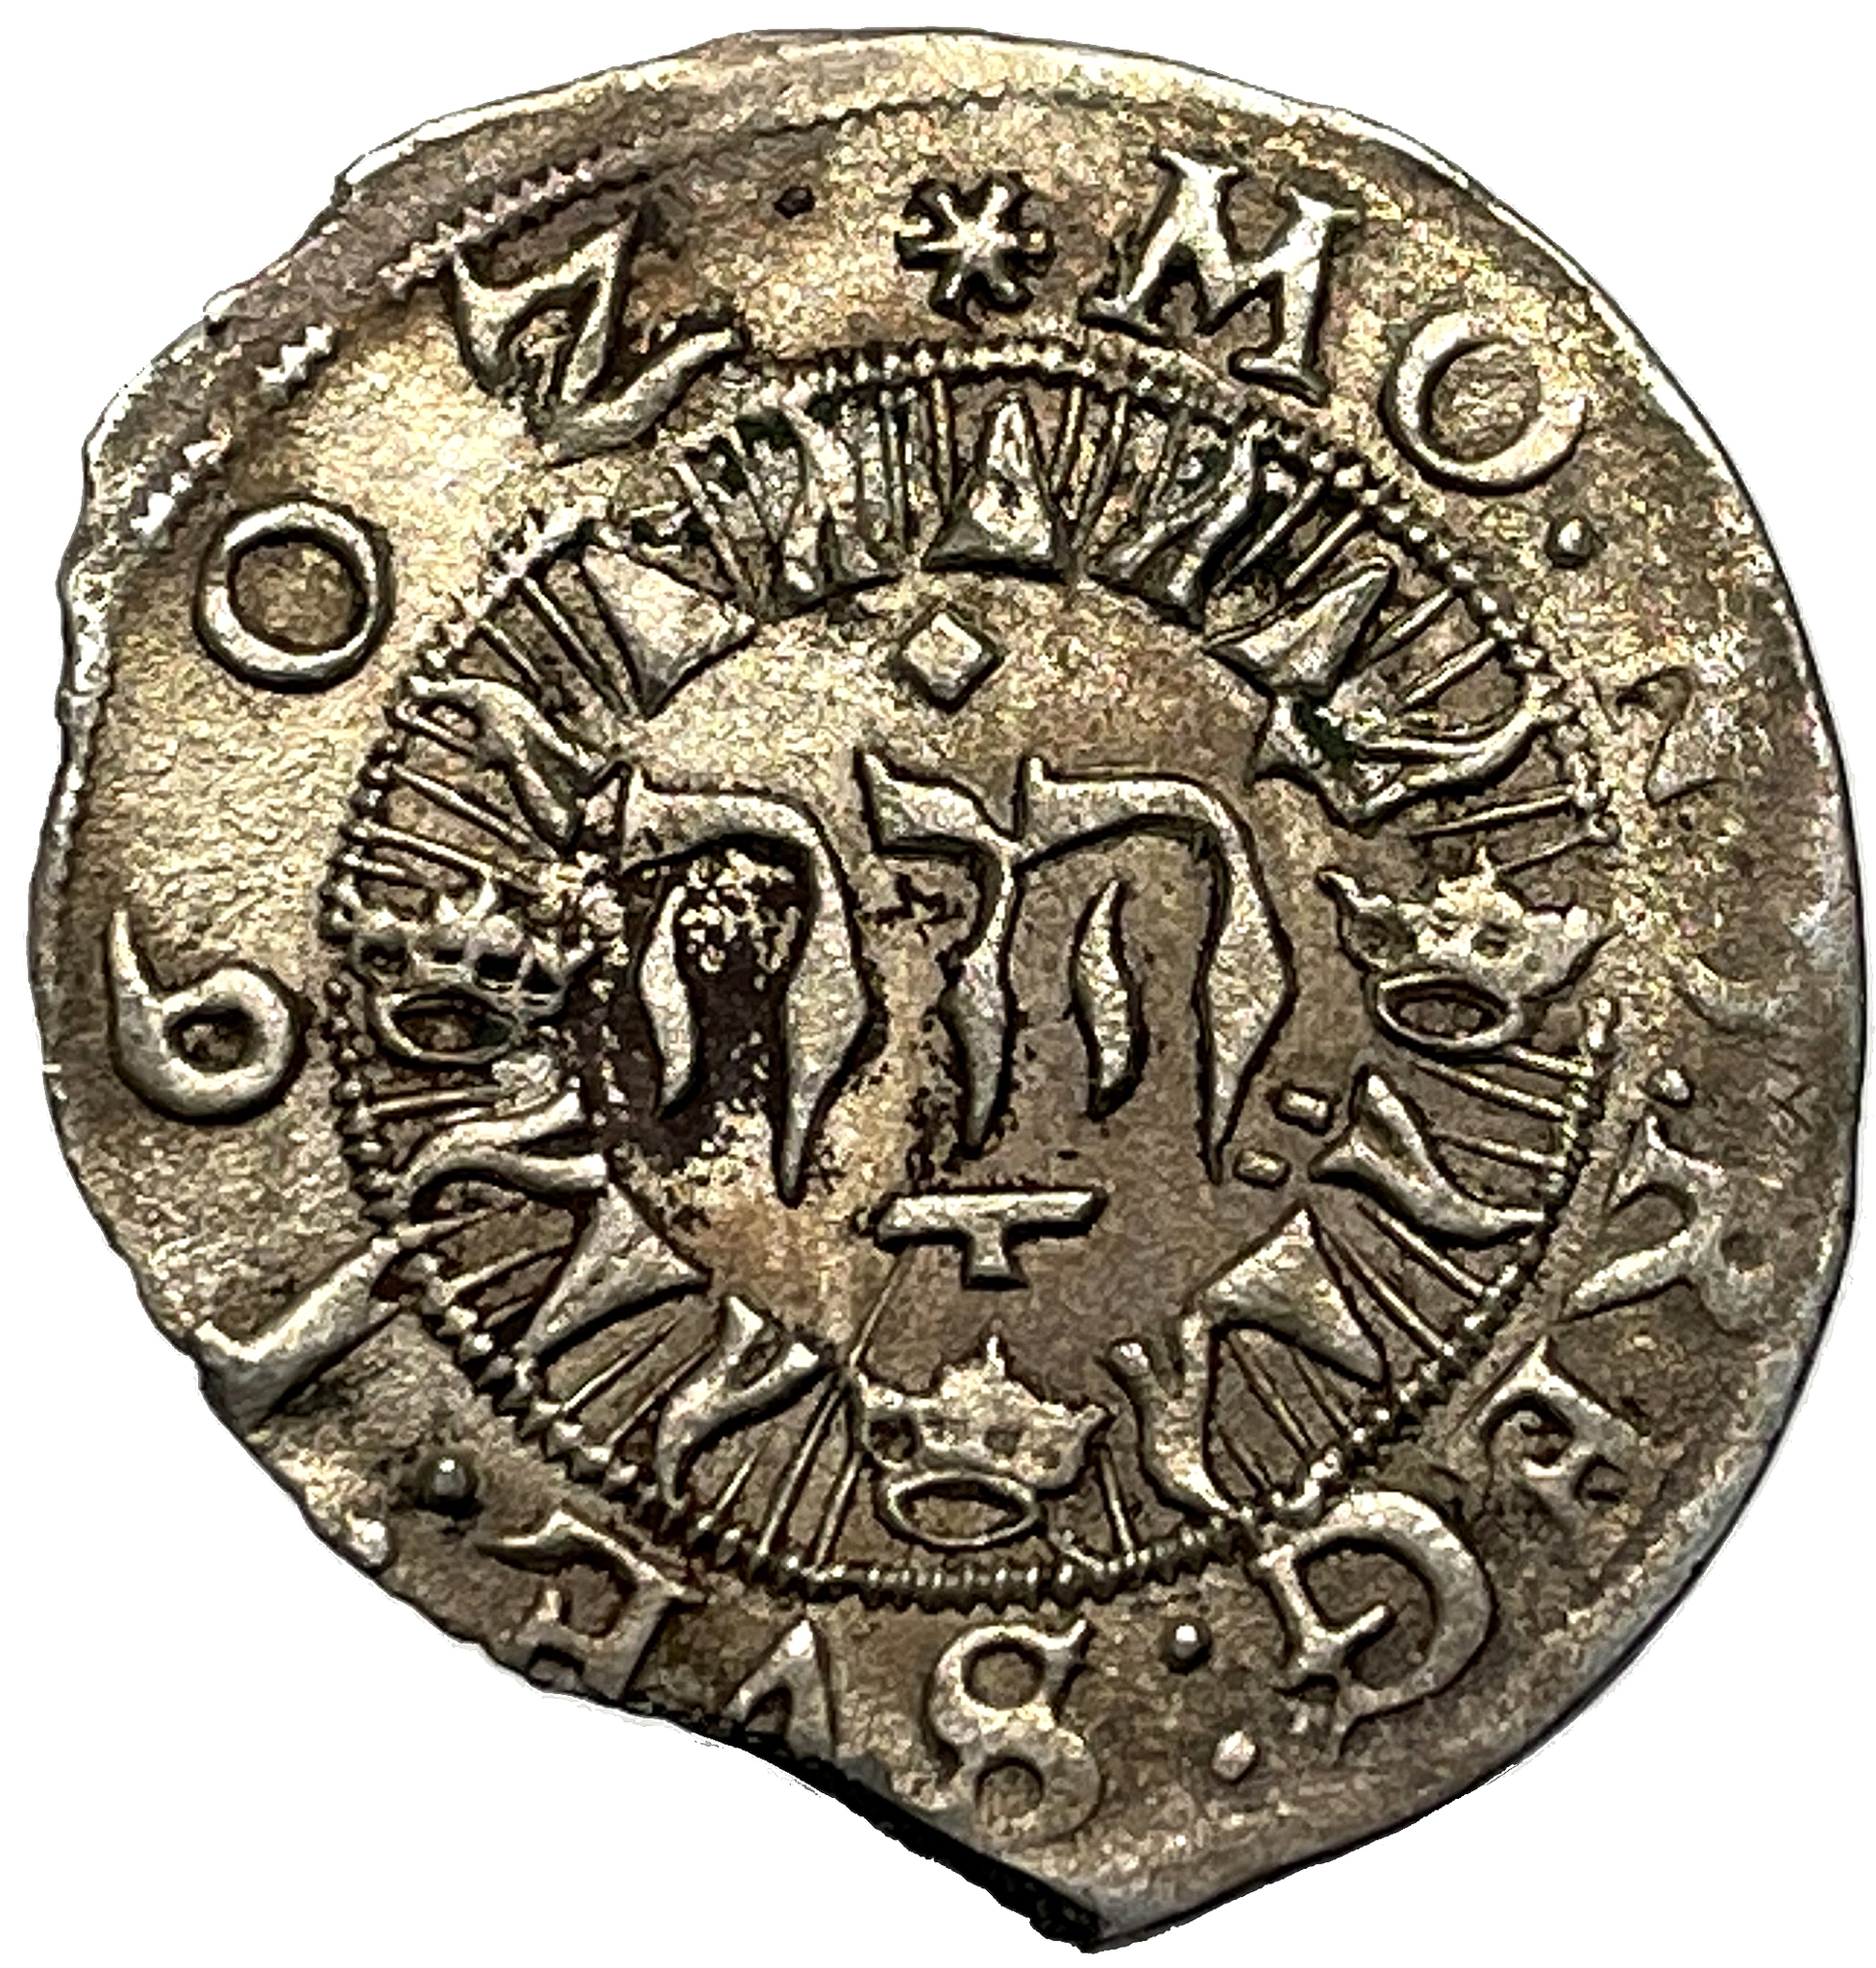 Karl som Riksföreståndare 2 Öre 1602 -  Ett sällsynt typmynt som saknas i de flesta myntsamlingar